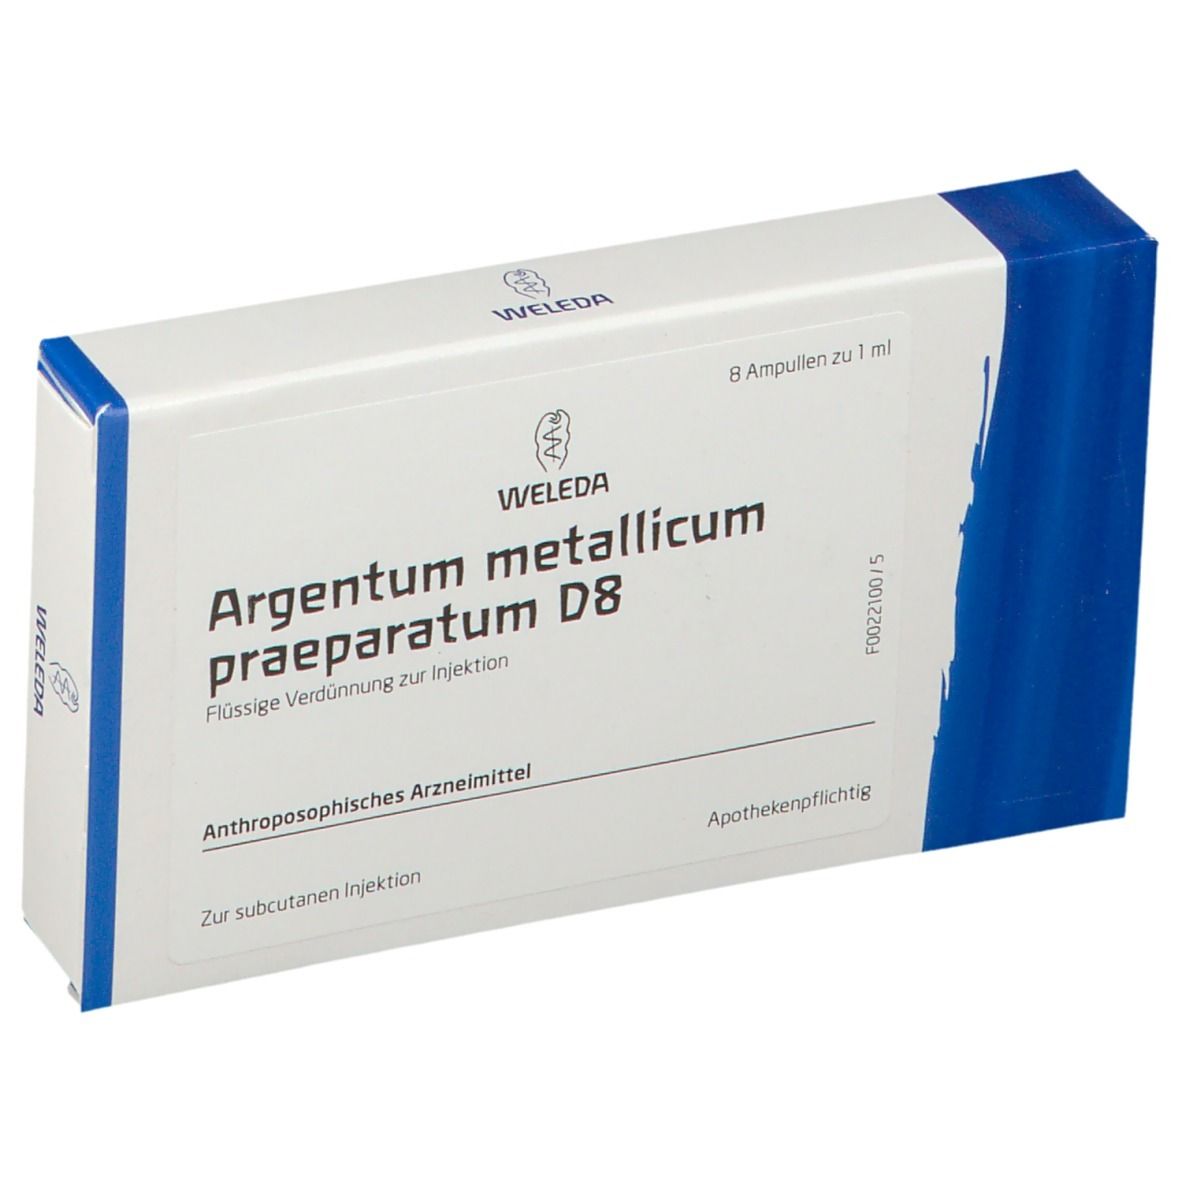 Argentum Metallicum Praep. D8 Ampullen